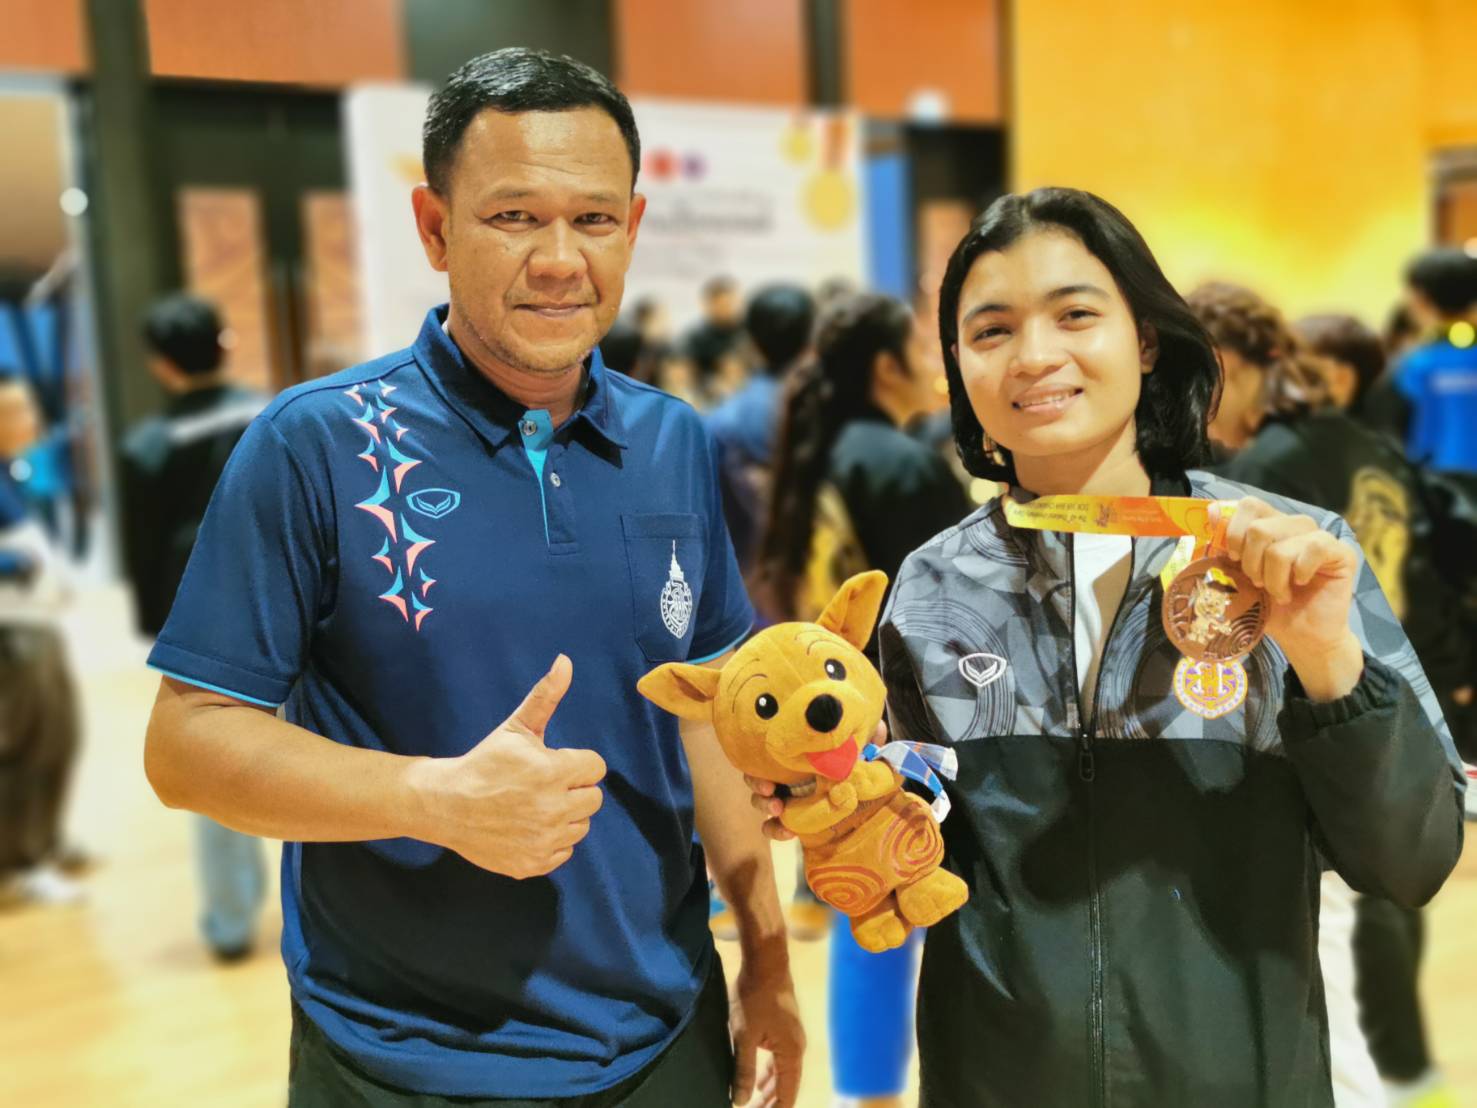 ขอแสดงความยินดีกับ "น้องยูฟ่า" นักกีฬายูยิตสู คว้าเหรียญทองแดงในกีฬามหาวิทยาลัยแห่งประเทศไทย ครั้งที่ 48